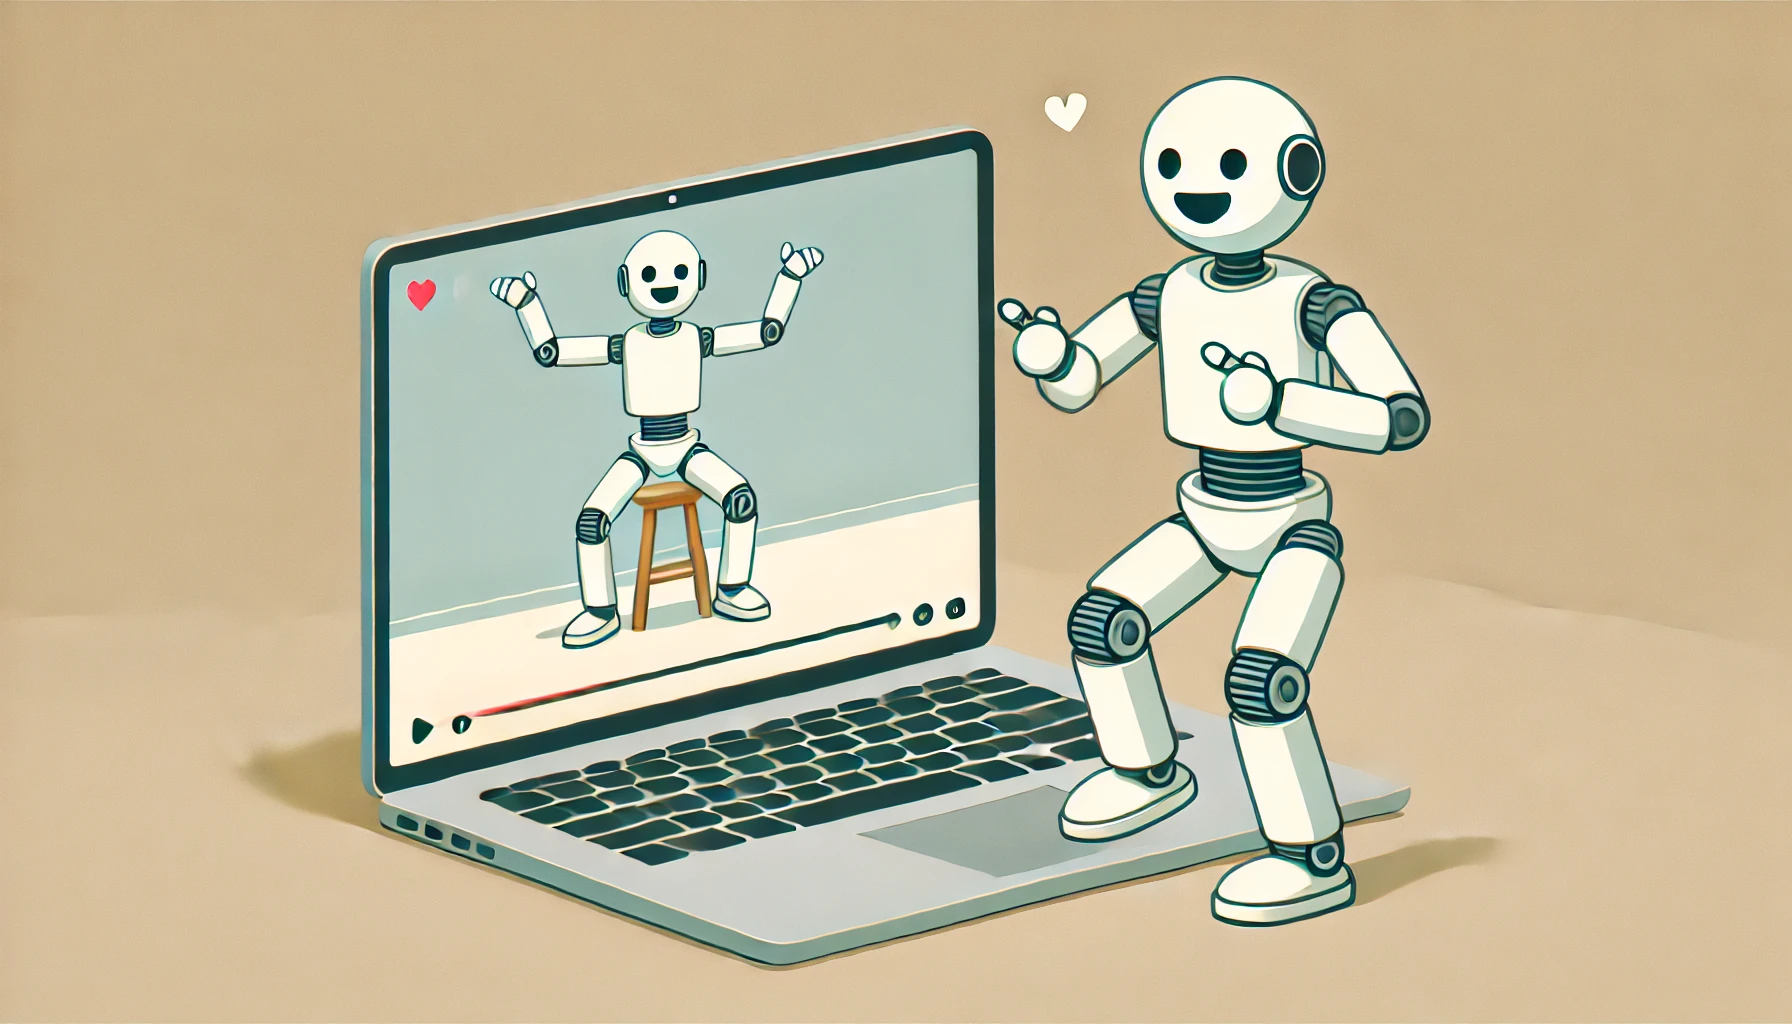 Un nuevo enfoque para que los robots aprendan de vídeos online